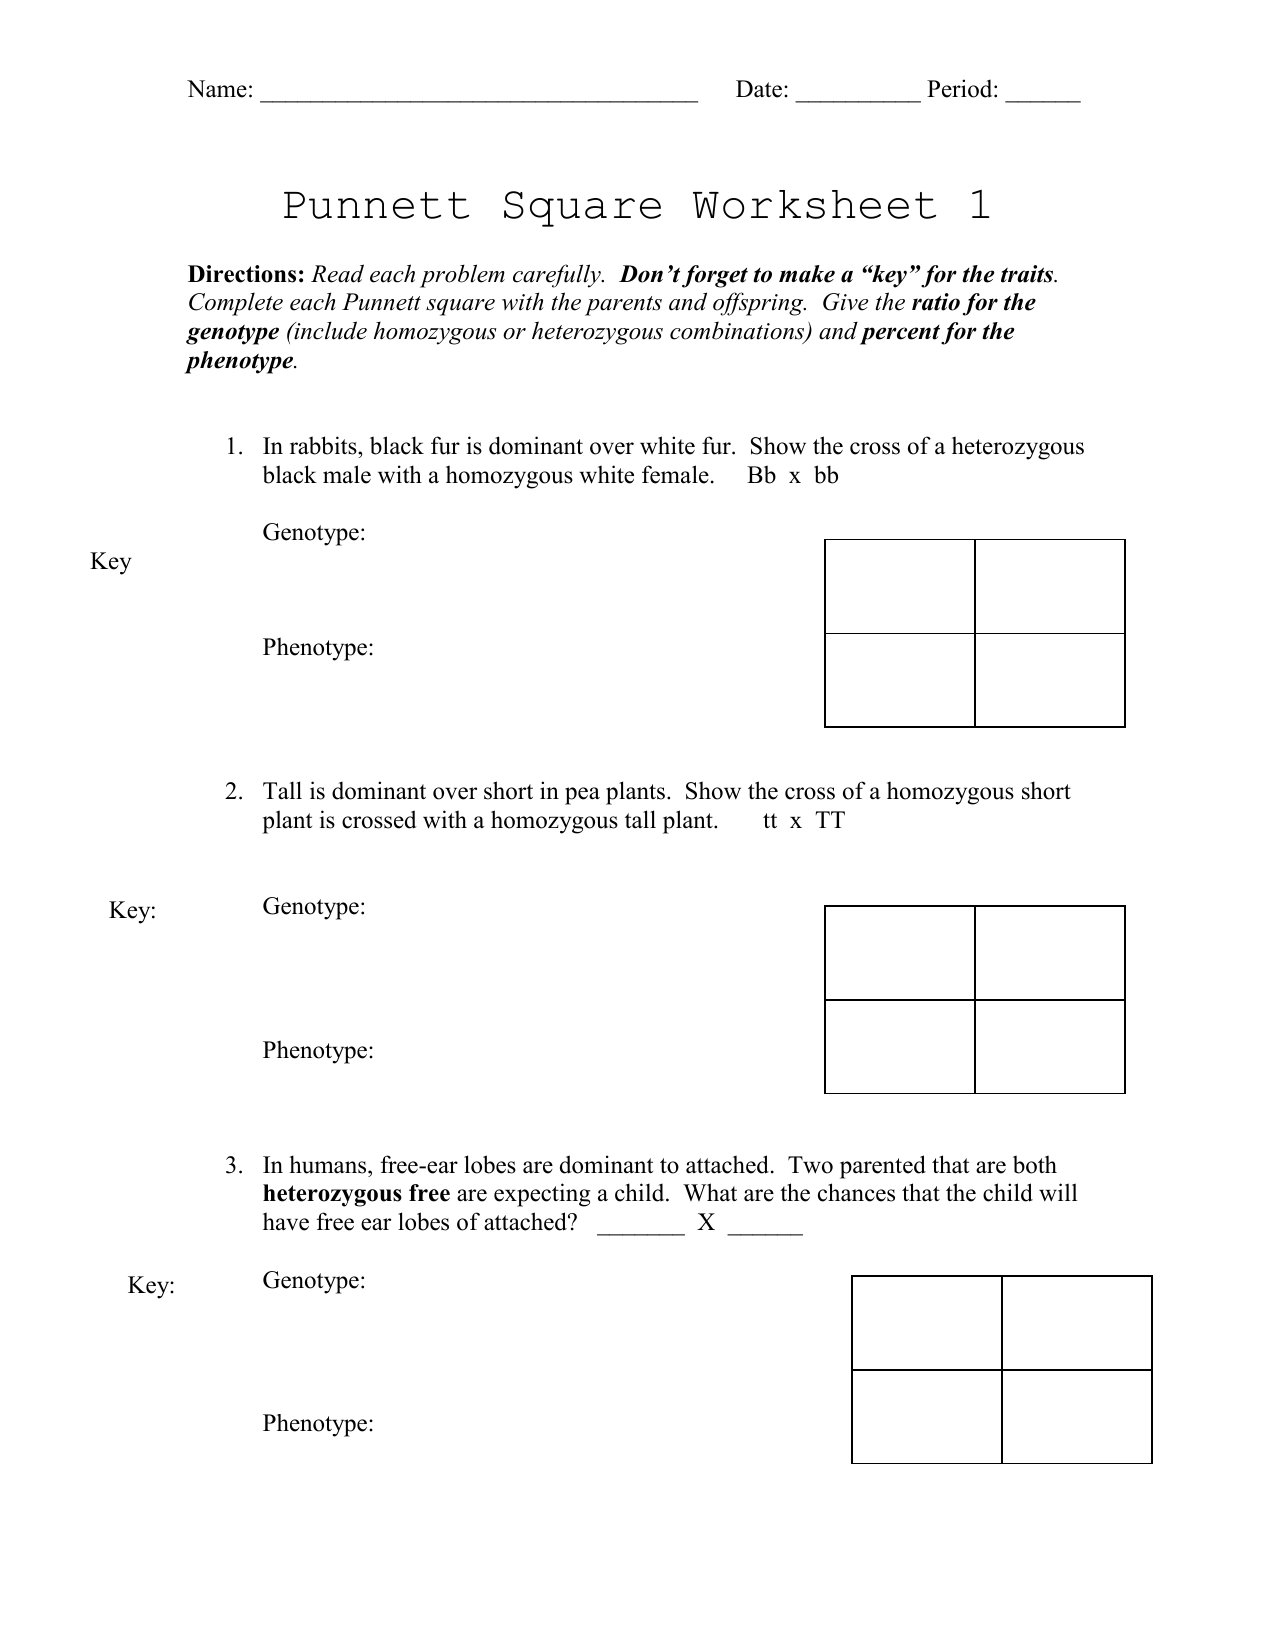 Punnett Square Worksheet 1 Db excel